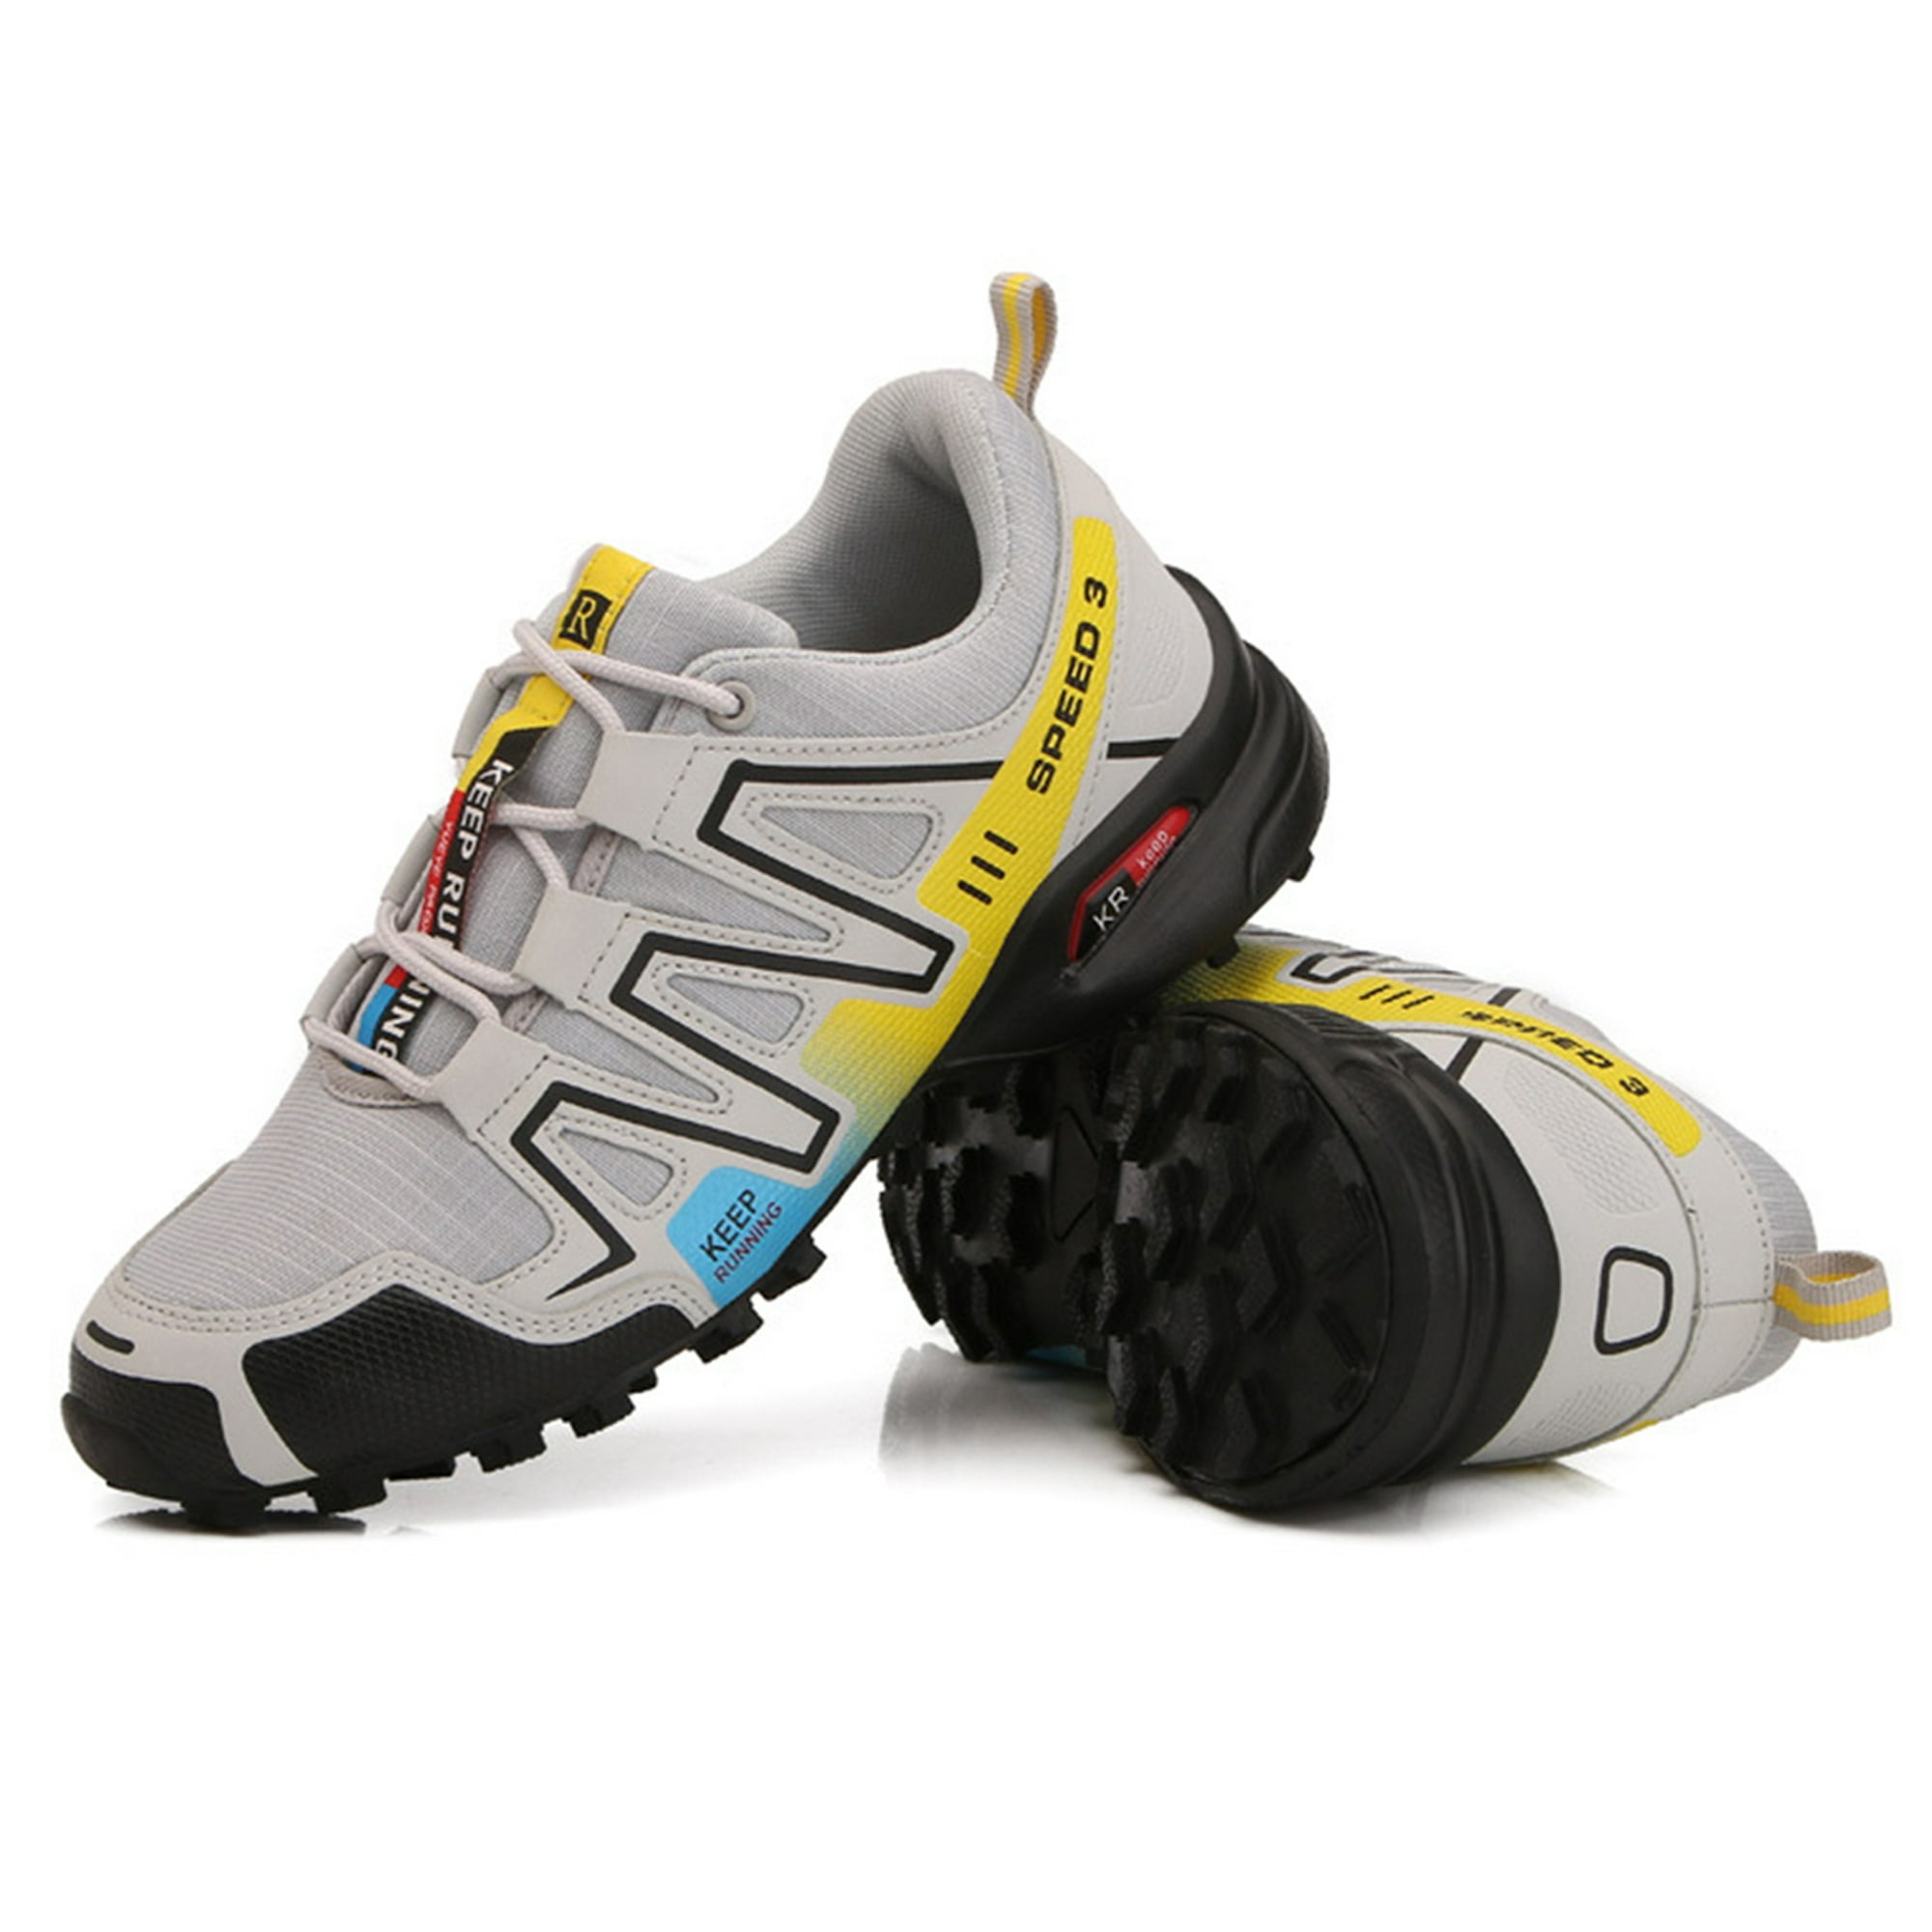 Zapatos de senderismo para hombre Botas de senderismo de goma transpirable  para deportes al aire lib Ndcxsfigh Tenis De Mujer Tenis De Hombre